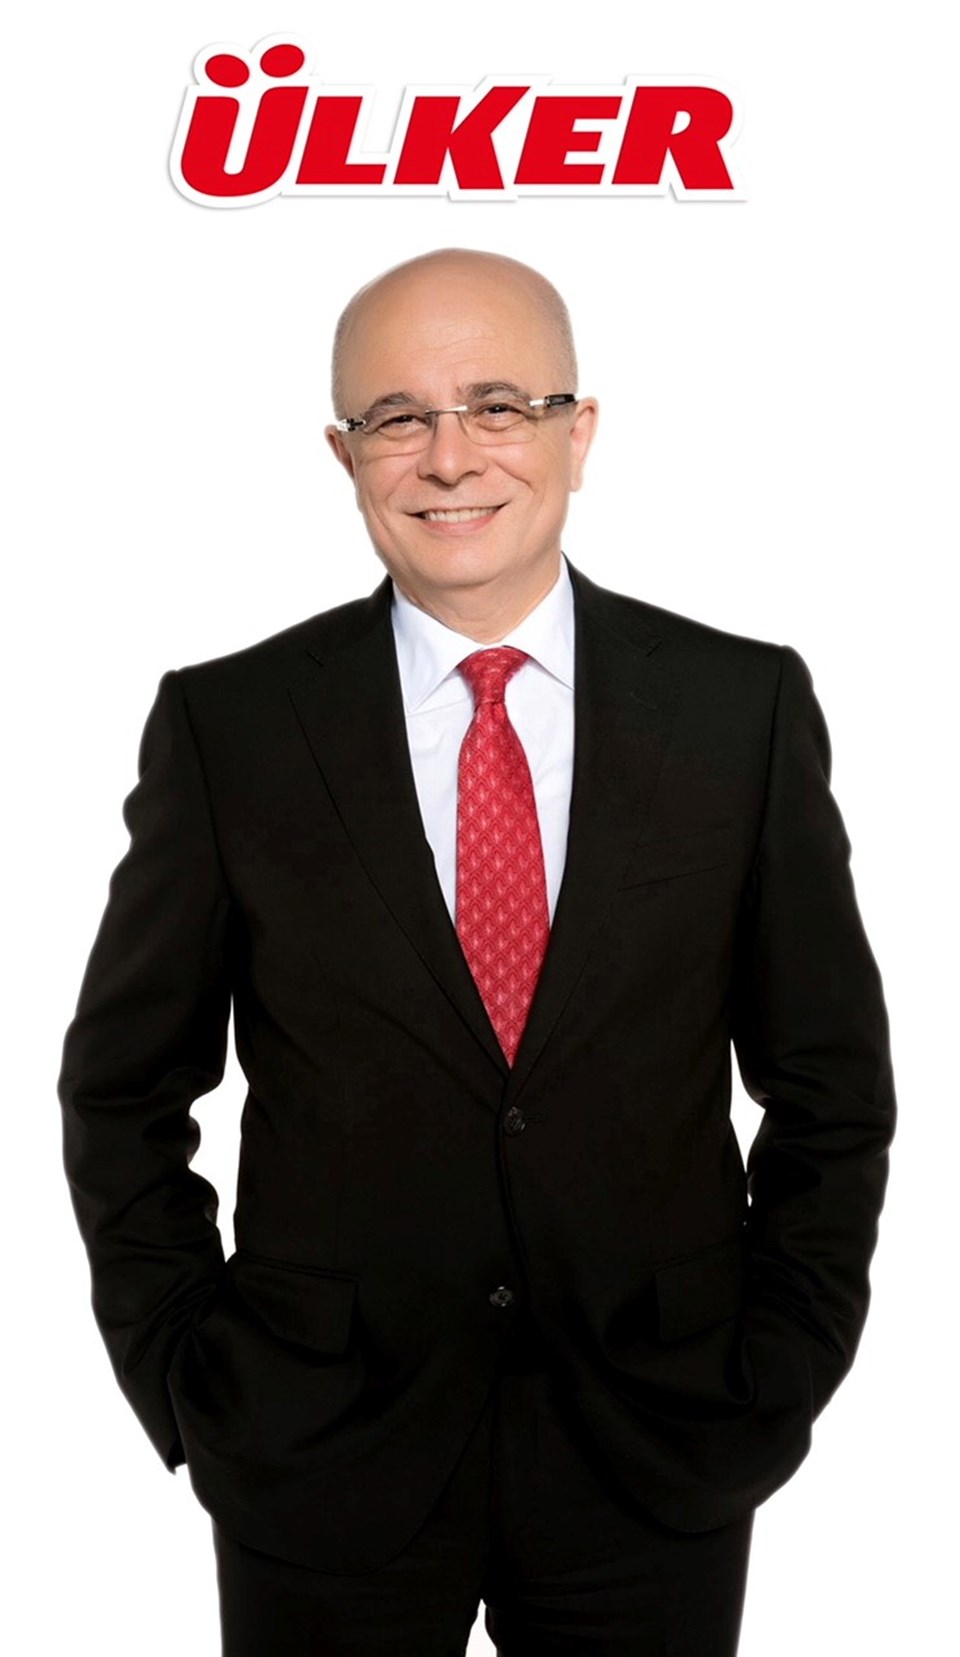 Ülker Üst Yöneticisi (CEO) Mehmet Tütüncü

